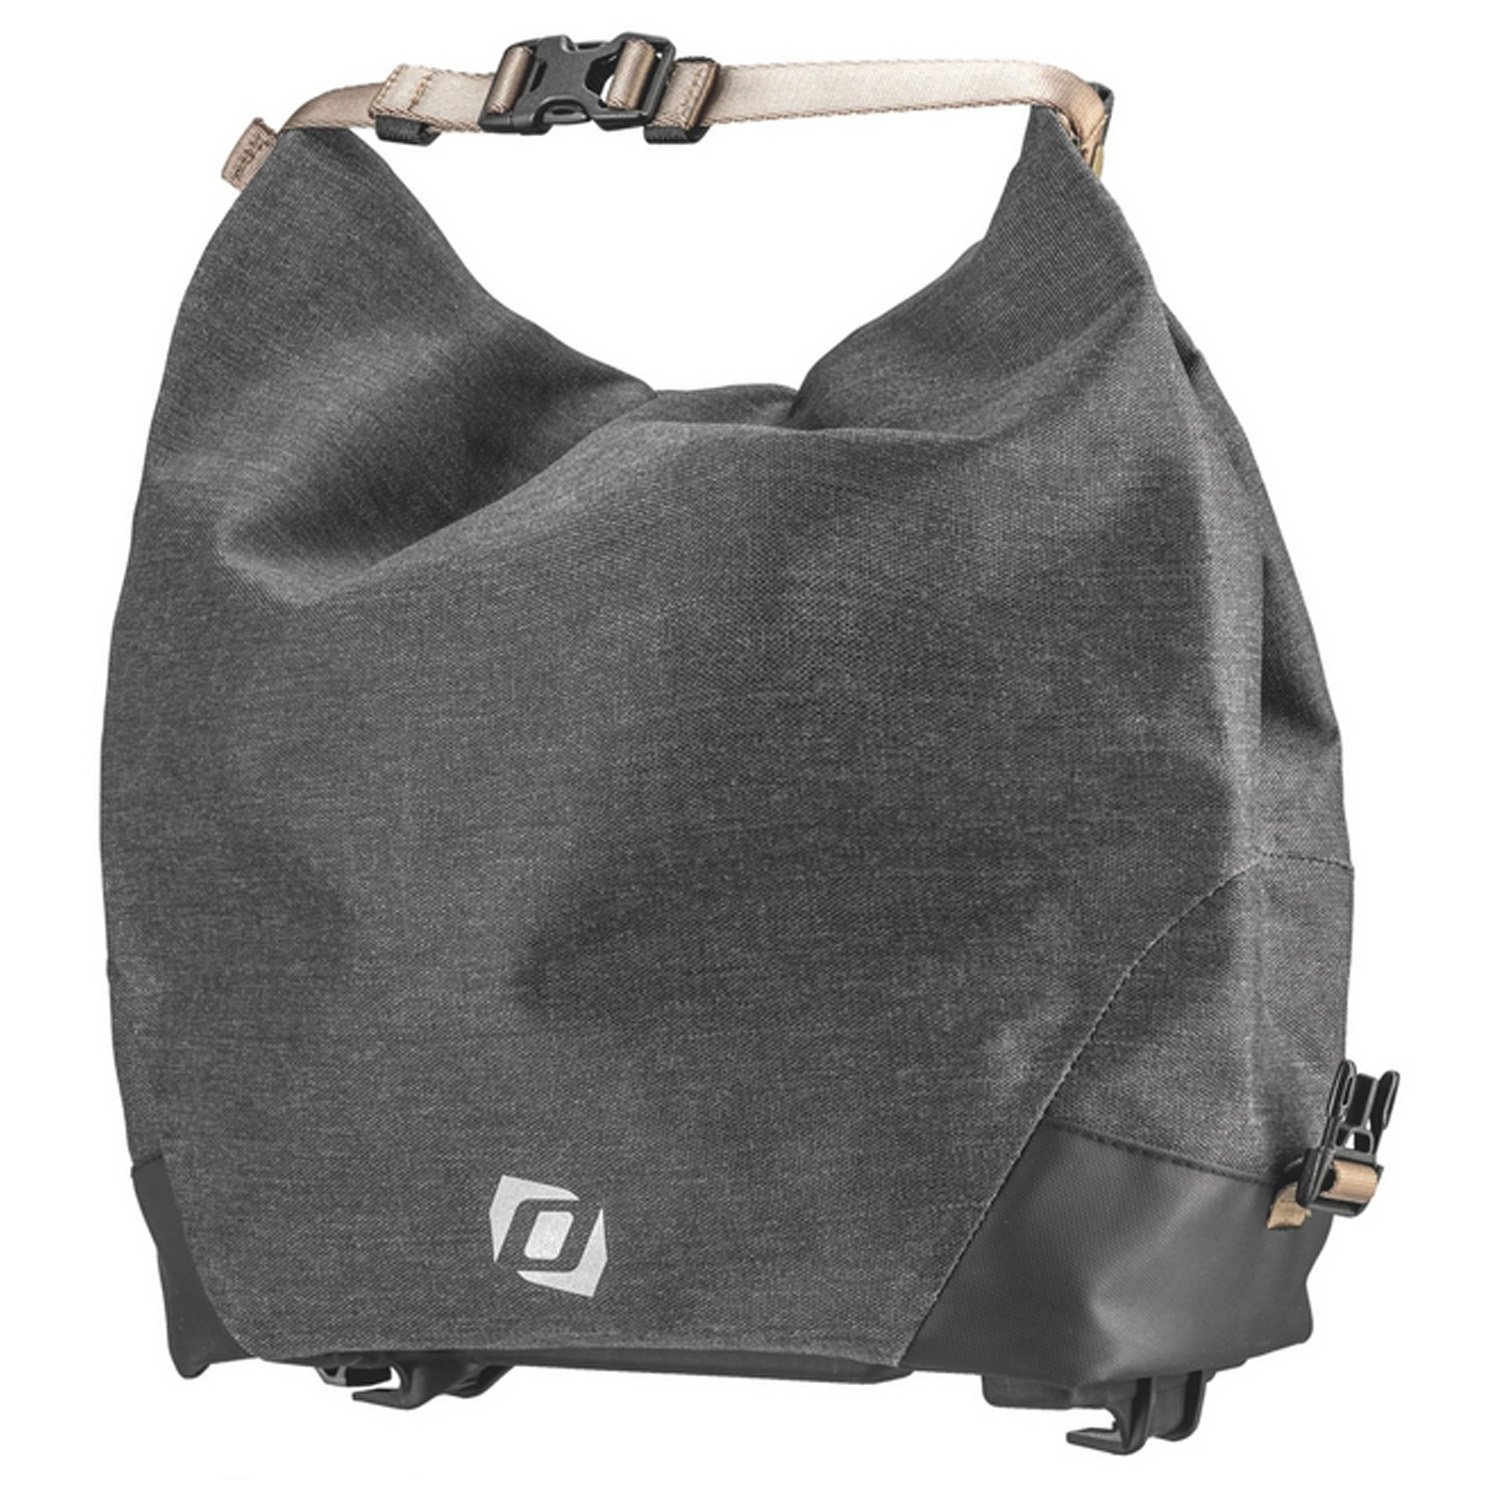 Велосумка Syncros Trunkbag 2.0, для багажника, черный, ES289143-0001 сумка велосипедная syncros pannier bag для багажника black es281115 0001